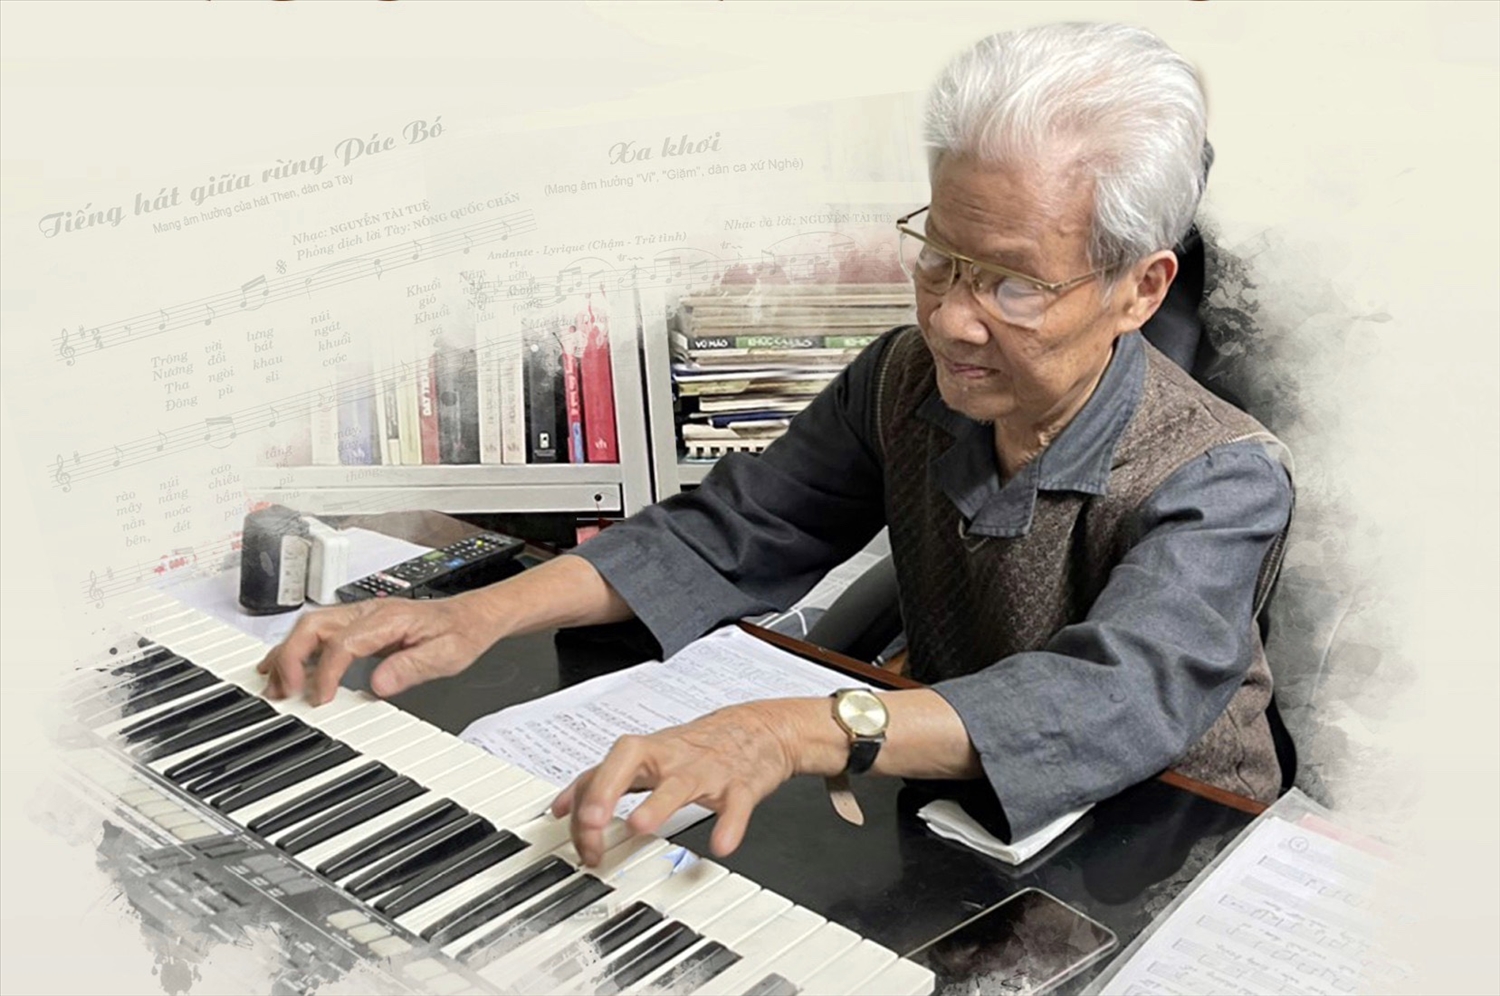 Nhạc sĩ Nguyễn Tài Tuệ - tác giả "Tiếng hát giữa rừng Pác Bó" qua đời